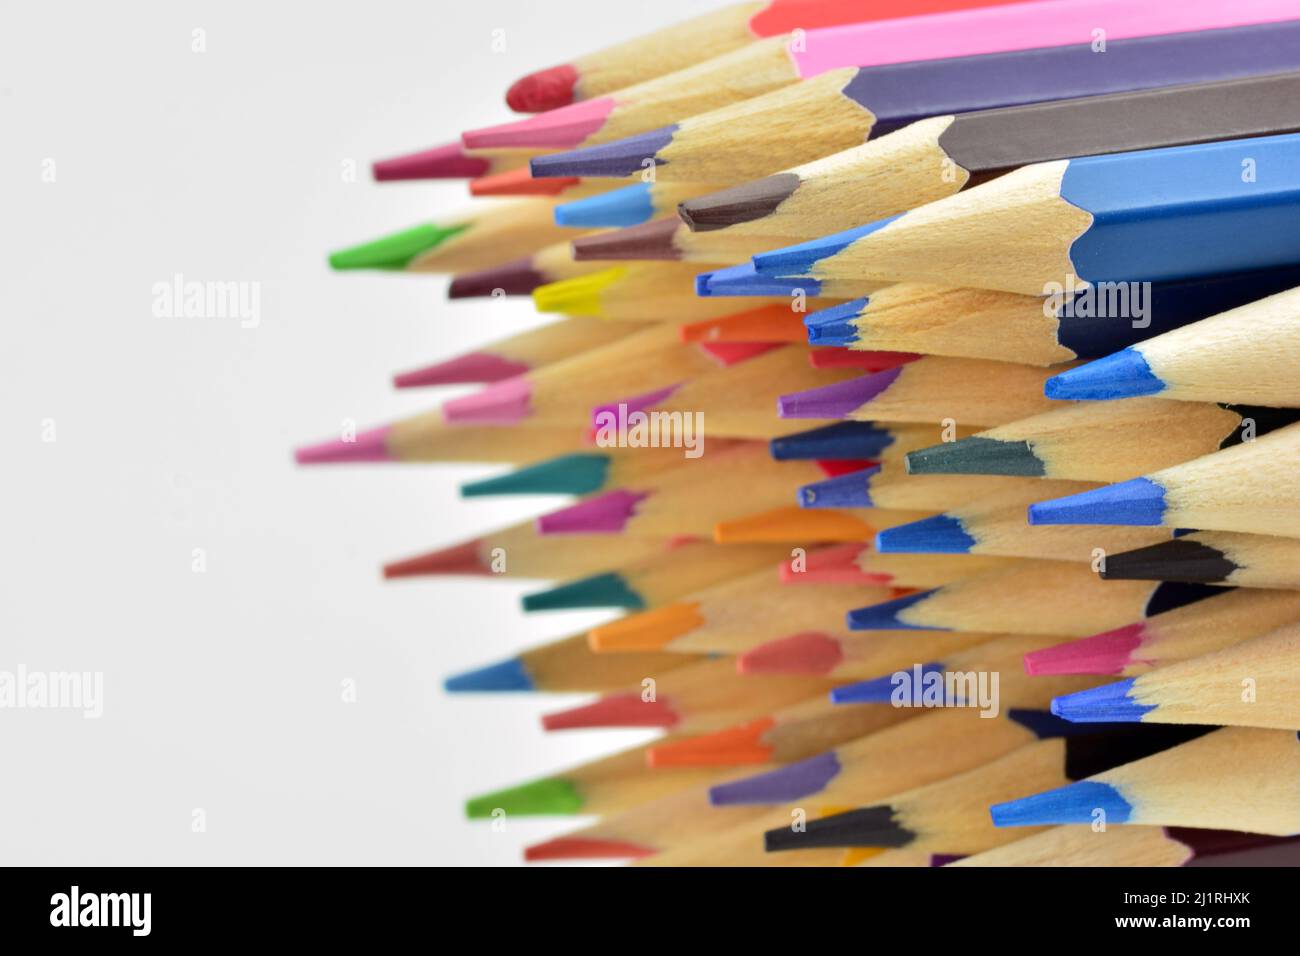 detalles de puntas de lápices de colores, aislado sobre fondo blanco Foto Stock